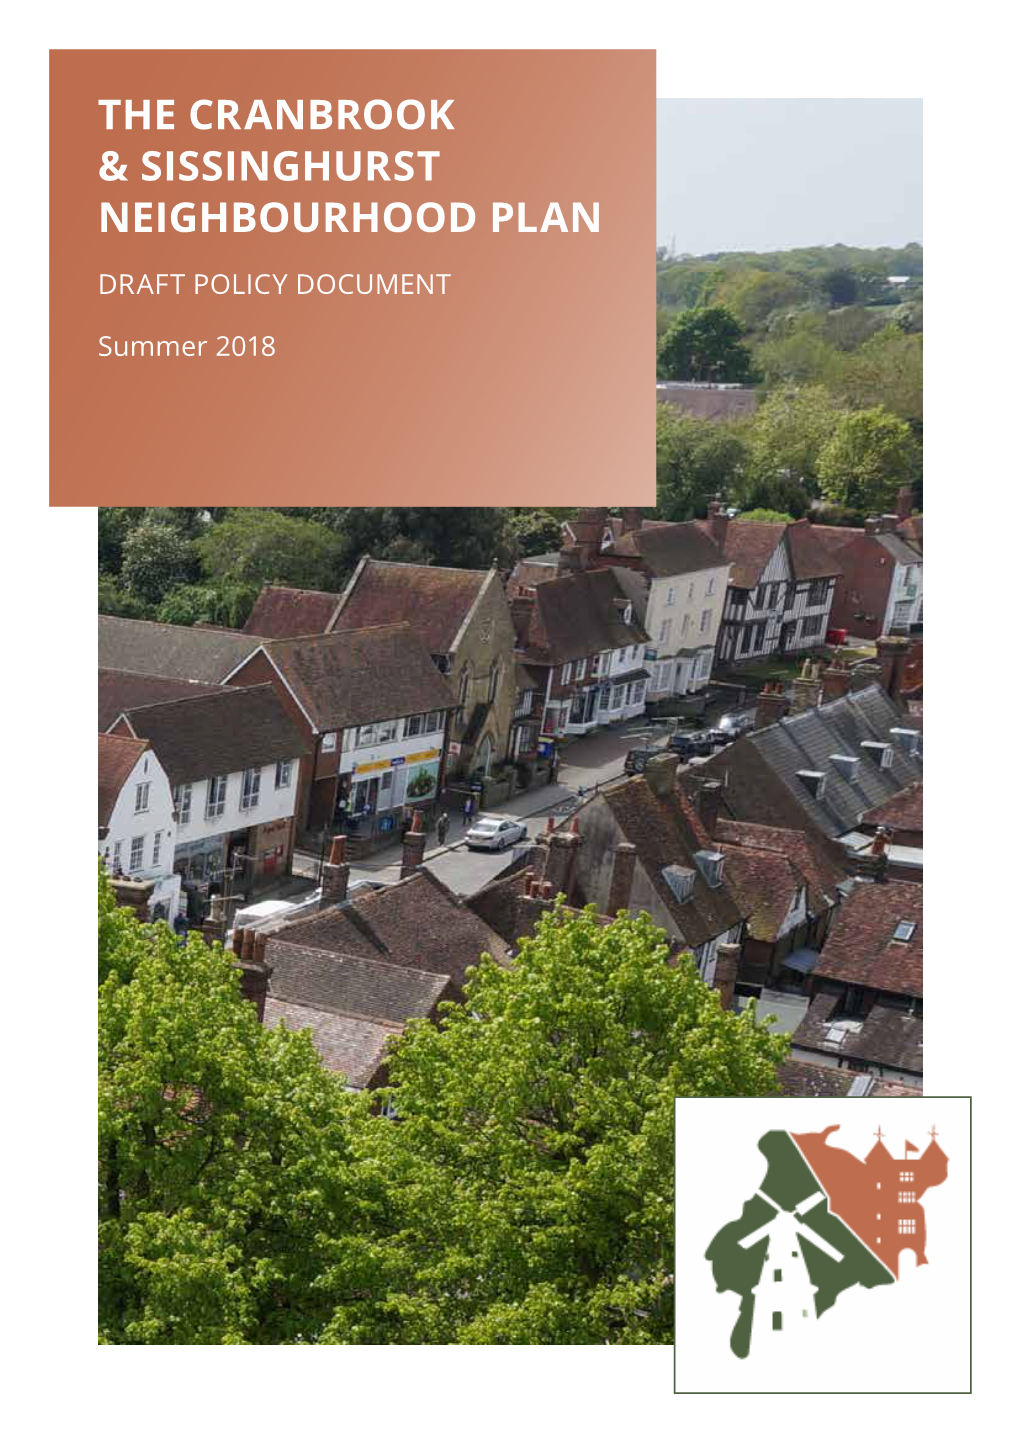 The Cranbrook & Sissinghurst Neighbourhood Plan